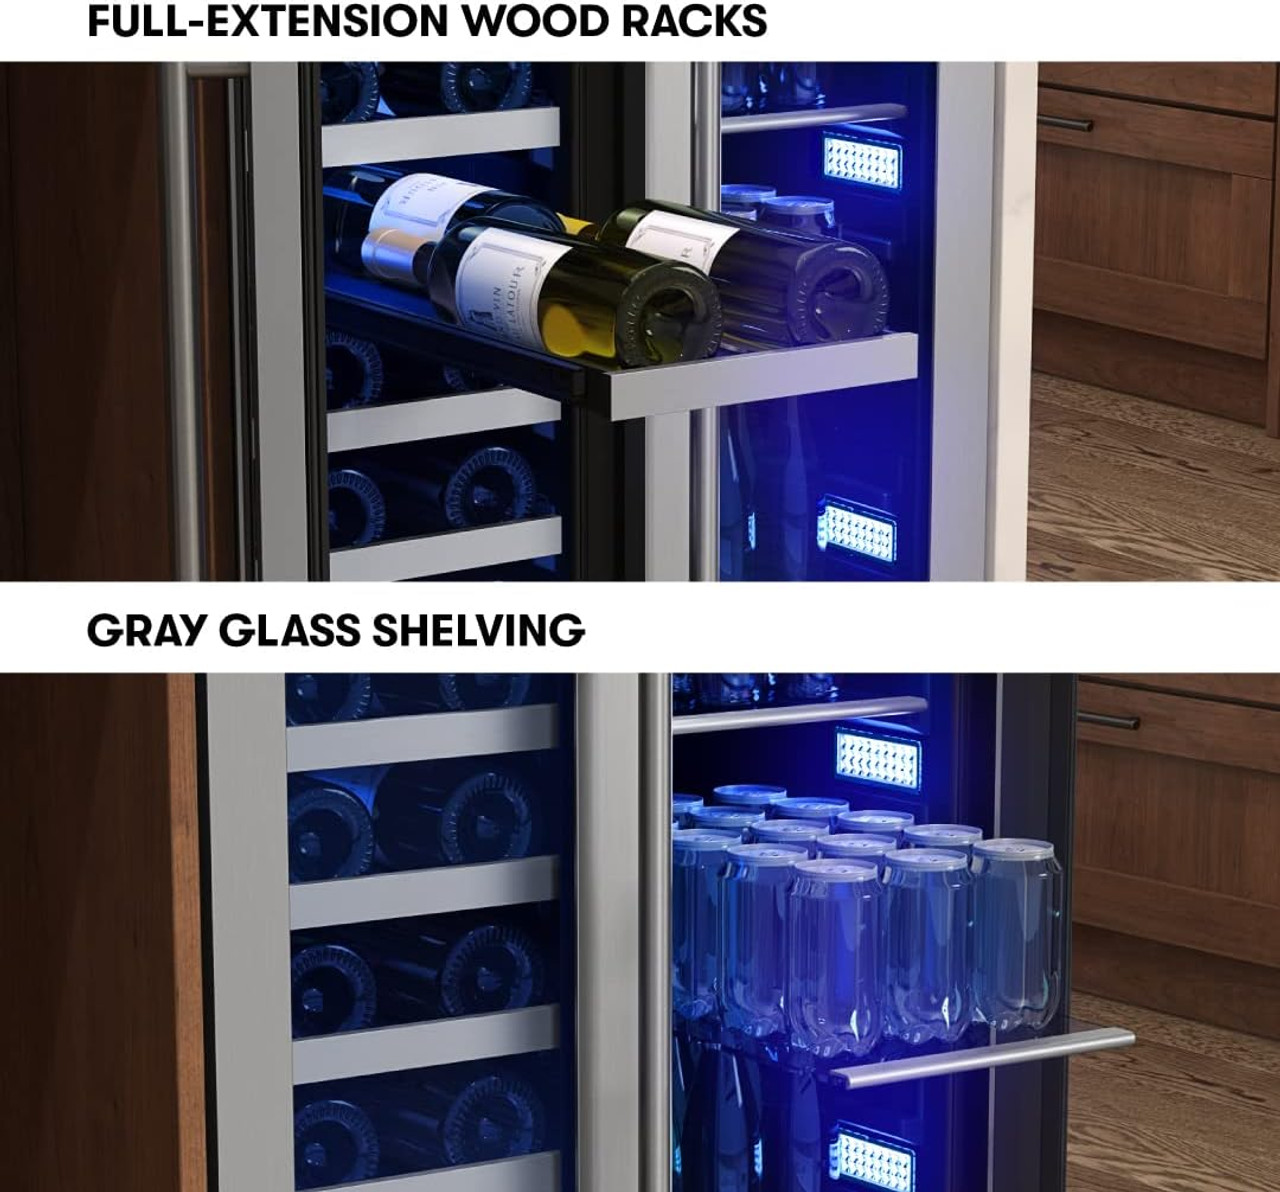 PRWB24C32BG Zephyr Presrv 24'' Wine Fridge & Beverage Refrigerator (Scratch and Dent)